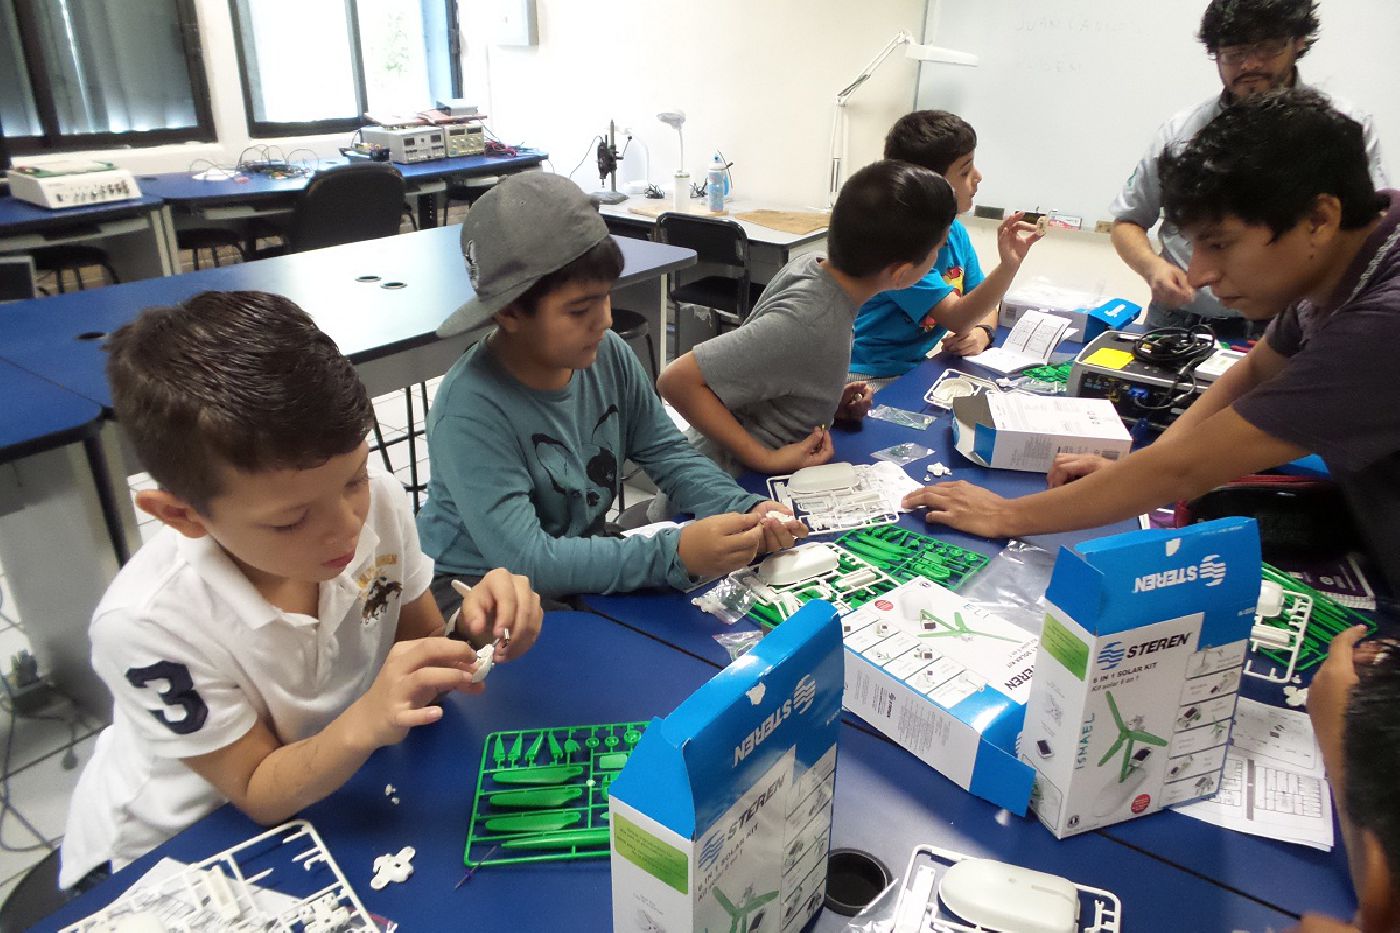 Se imparte en la UQROO con éxito talleres de Robótica; más de 80 niños de diferentes edades participan en los cursos